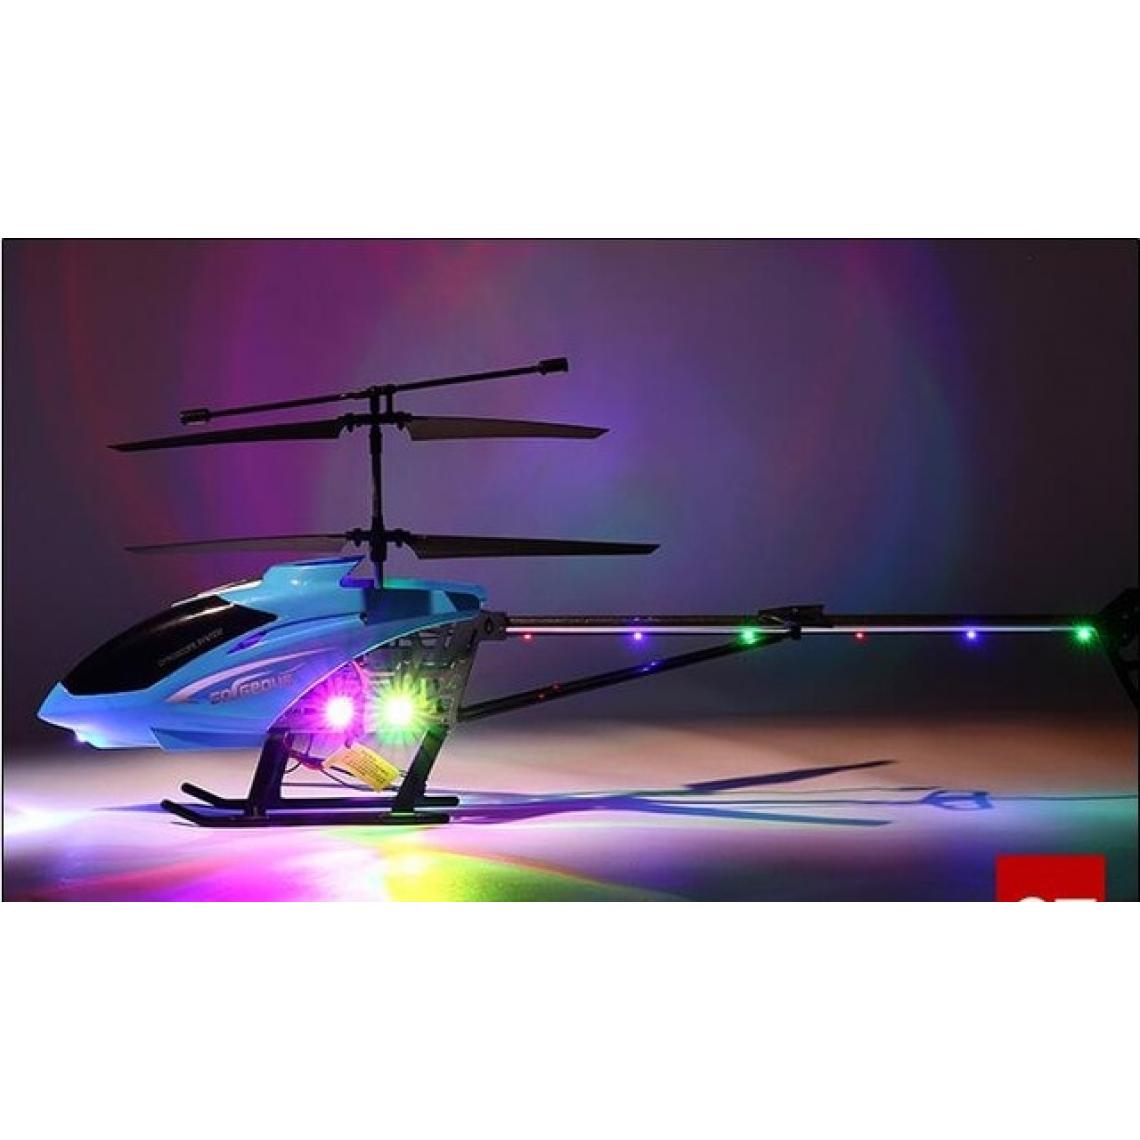 Universal - Hélicoptère RC en alliage avec gyroscope pour enfants Jouet de vol en plein air pour hélicoptère RC(Bleu) - Drone